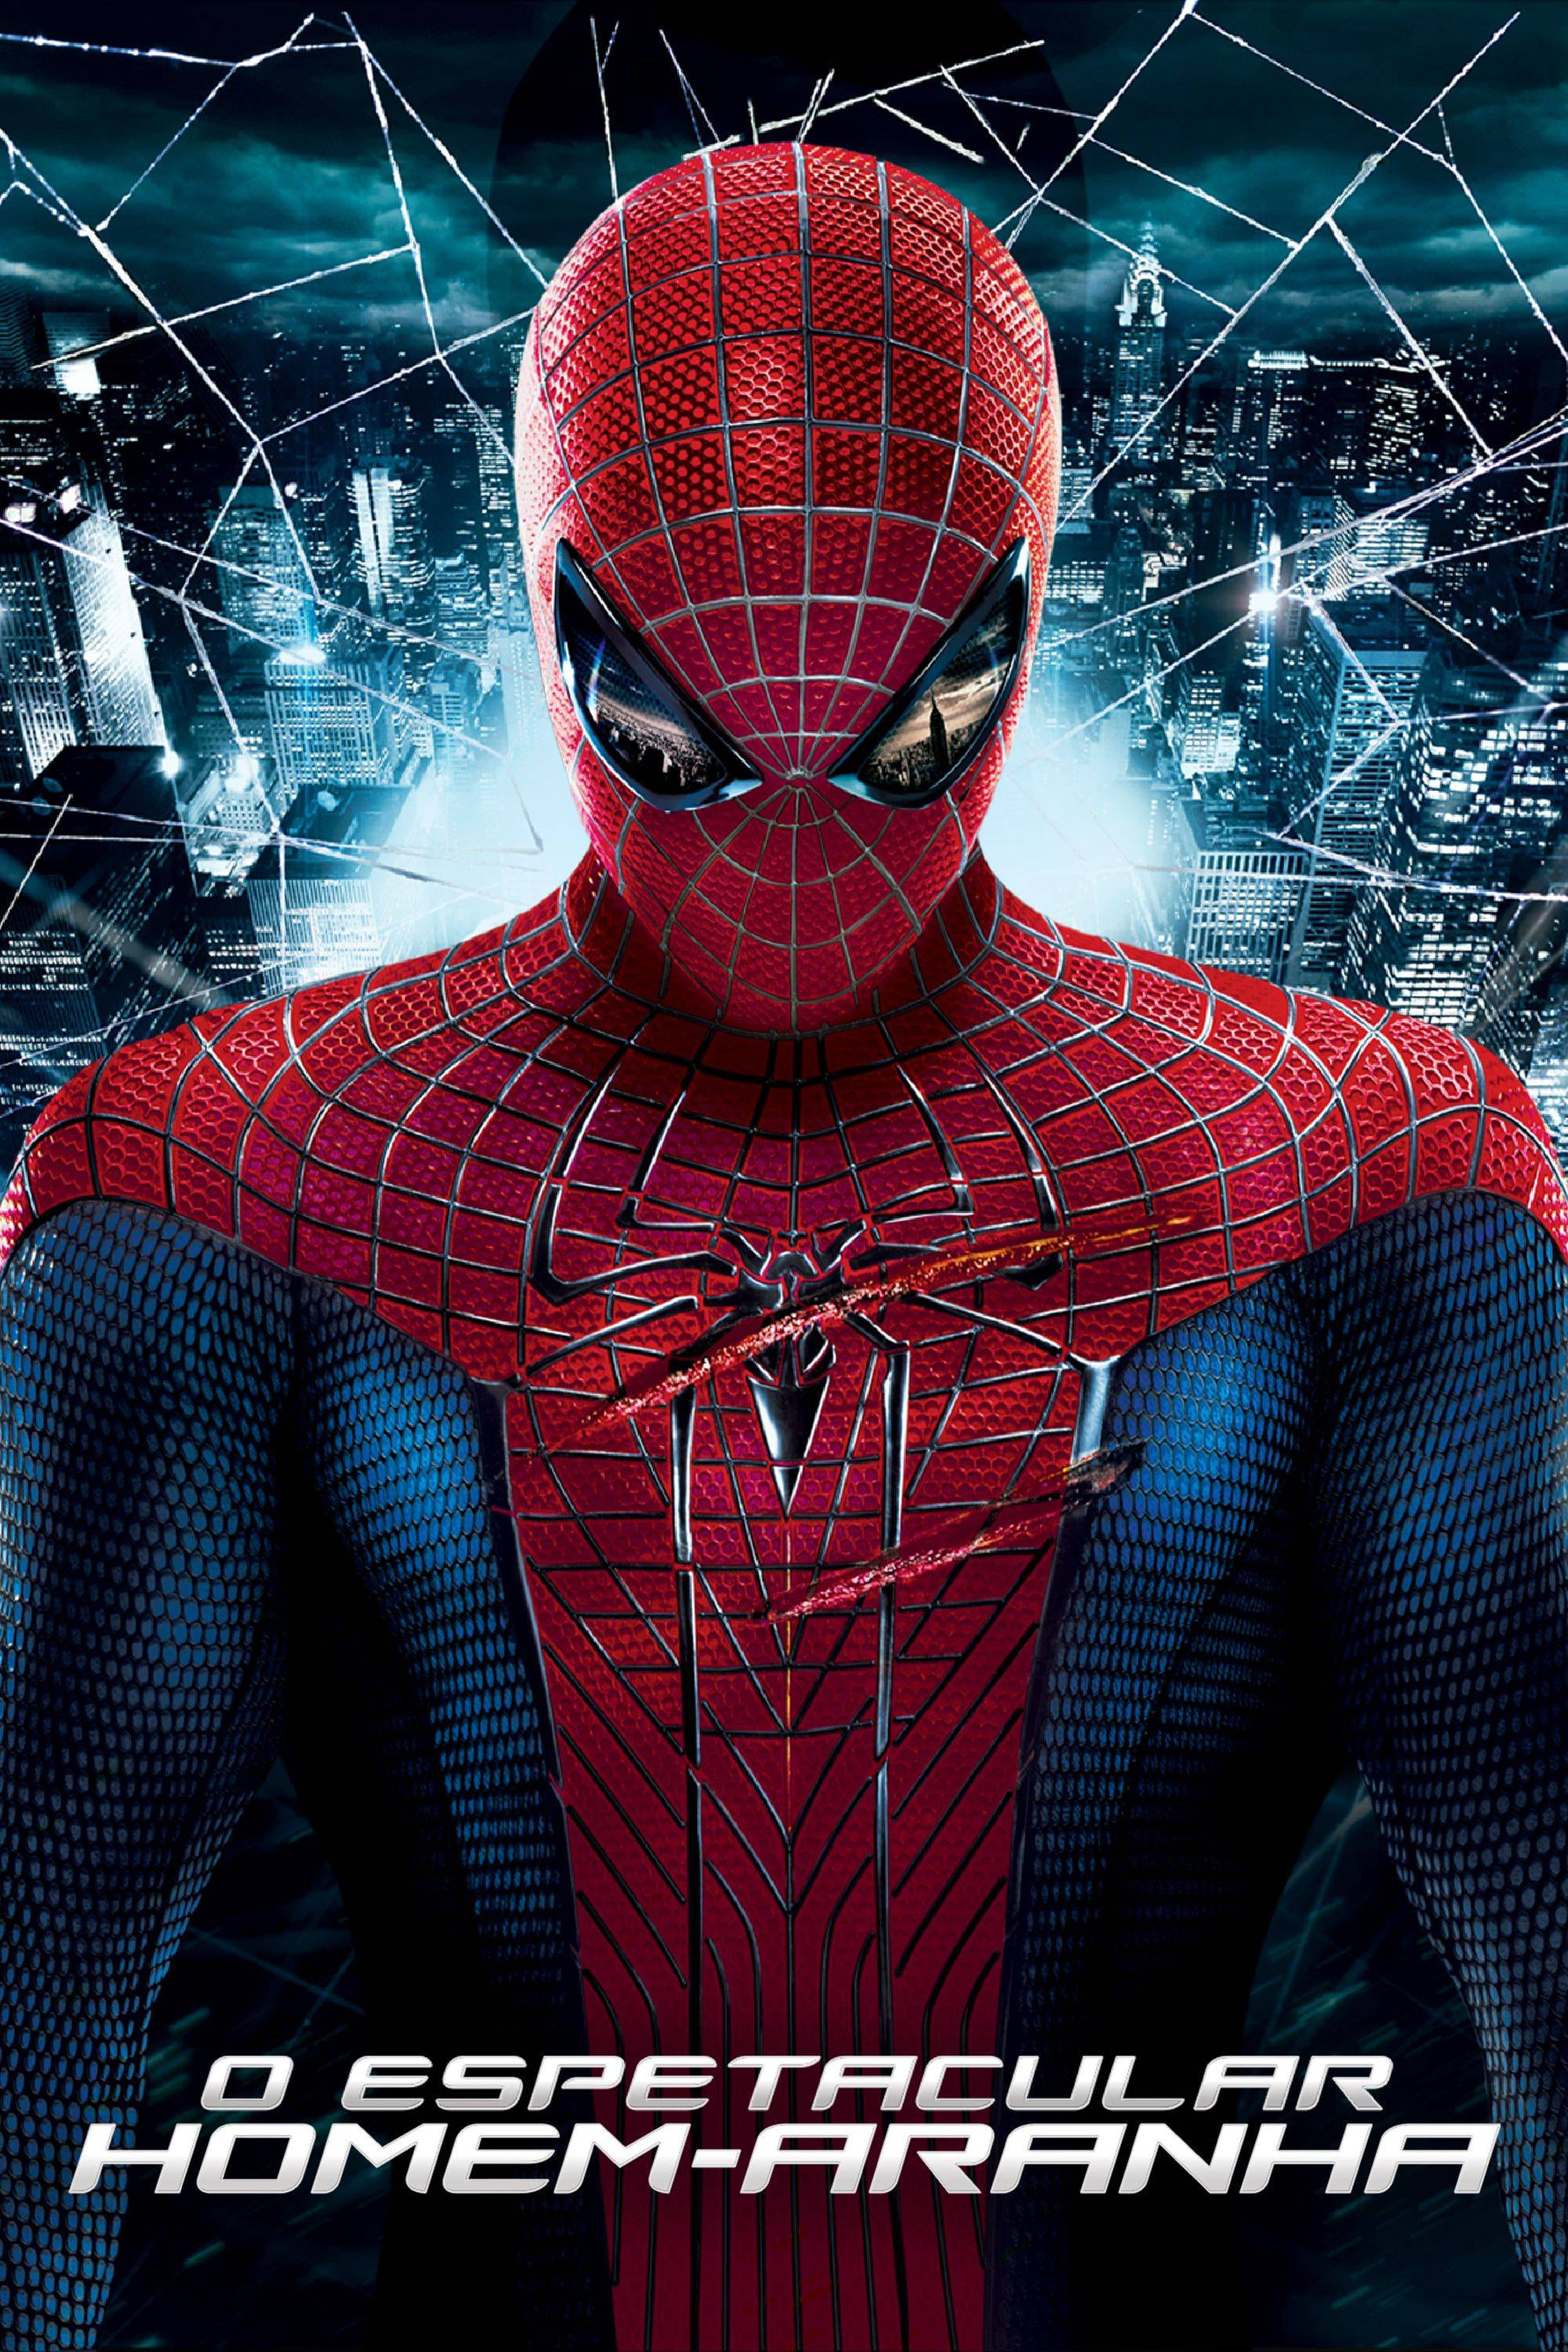 O Espetacular Homem Aranha - The Amazing Spider-Man